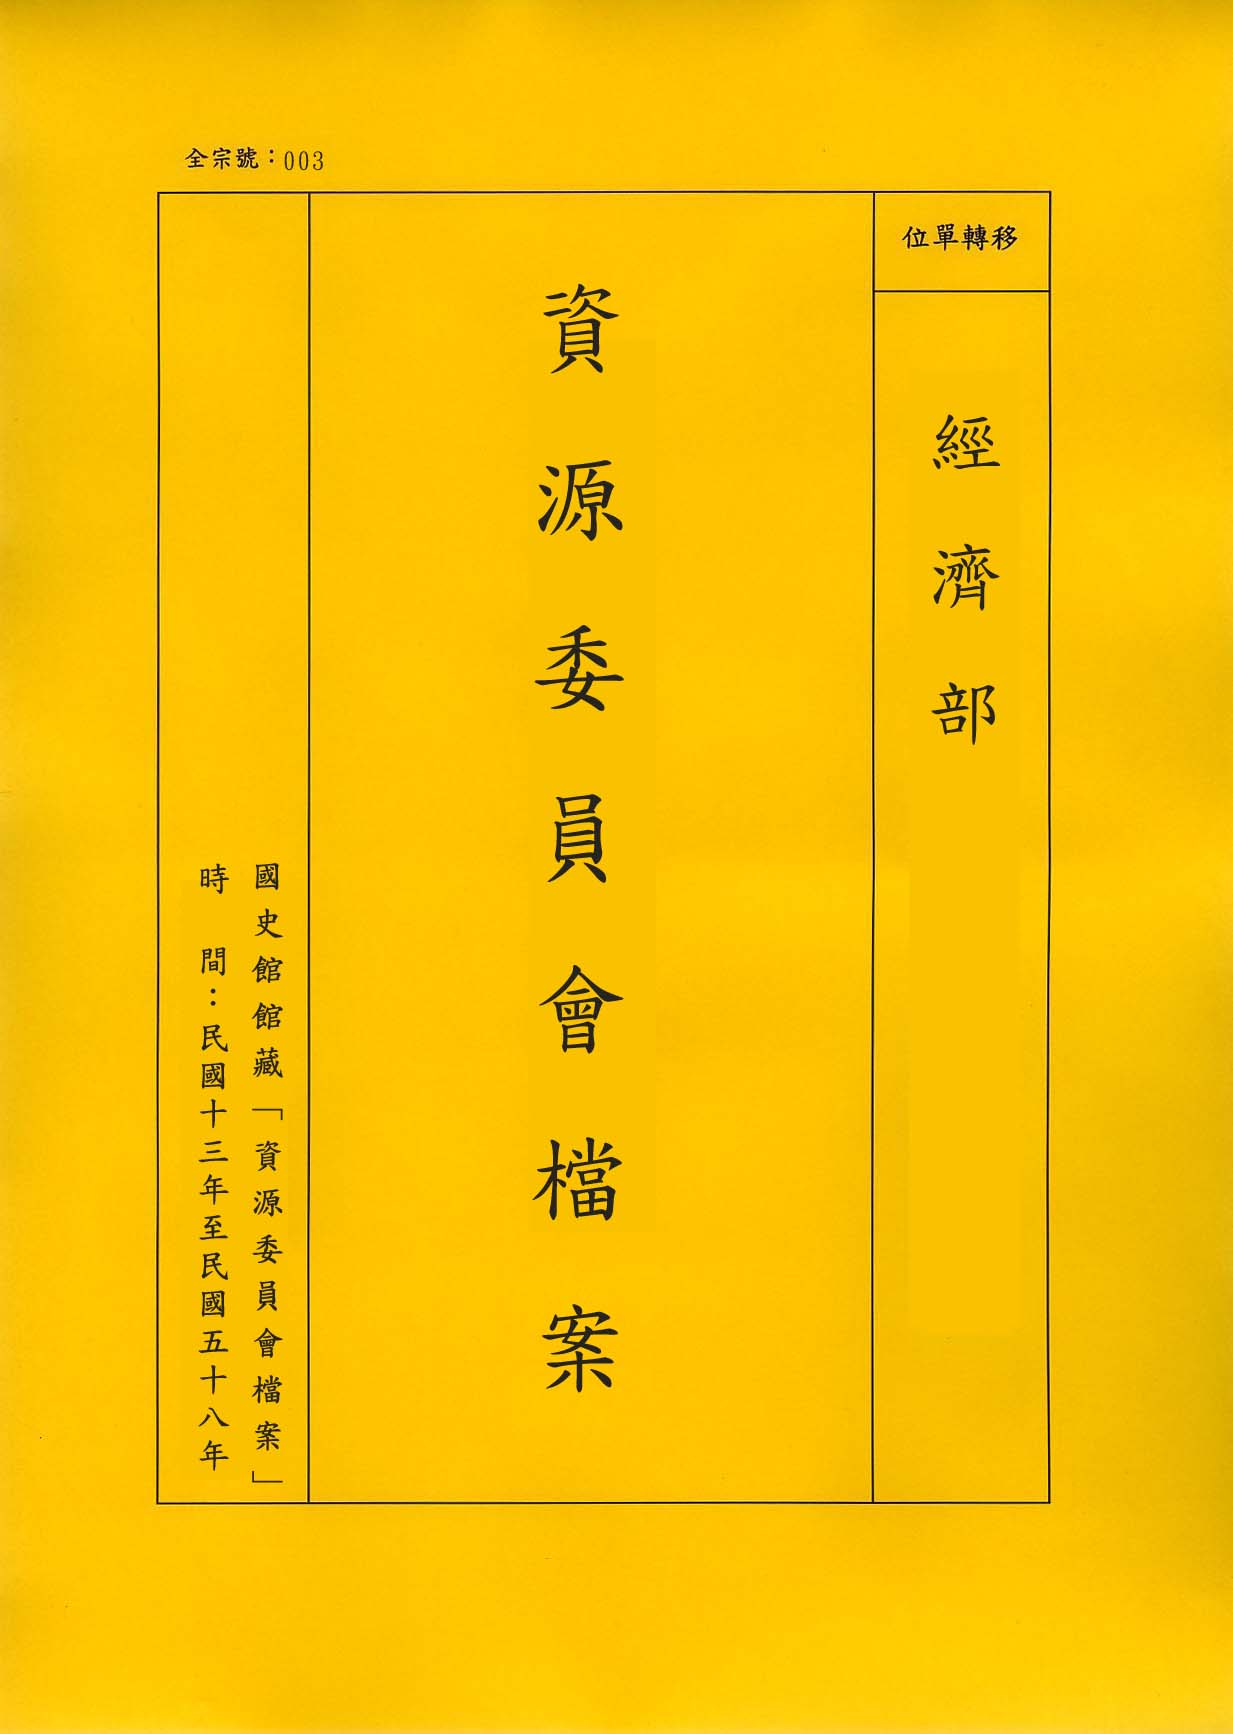 卷名:紡織類工廠登記卡片─青島(二)(003-010304-0168)